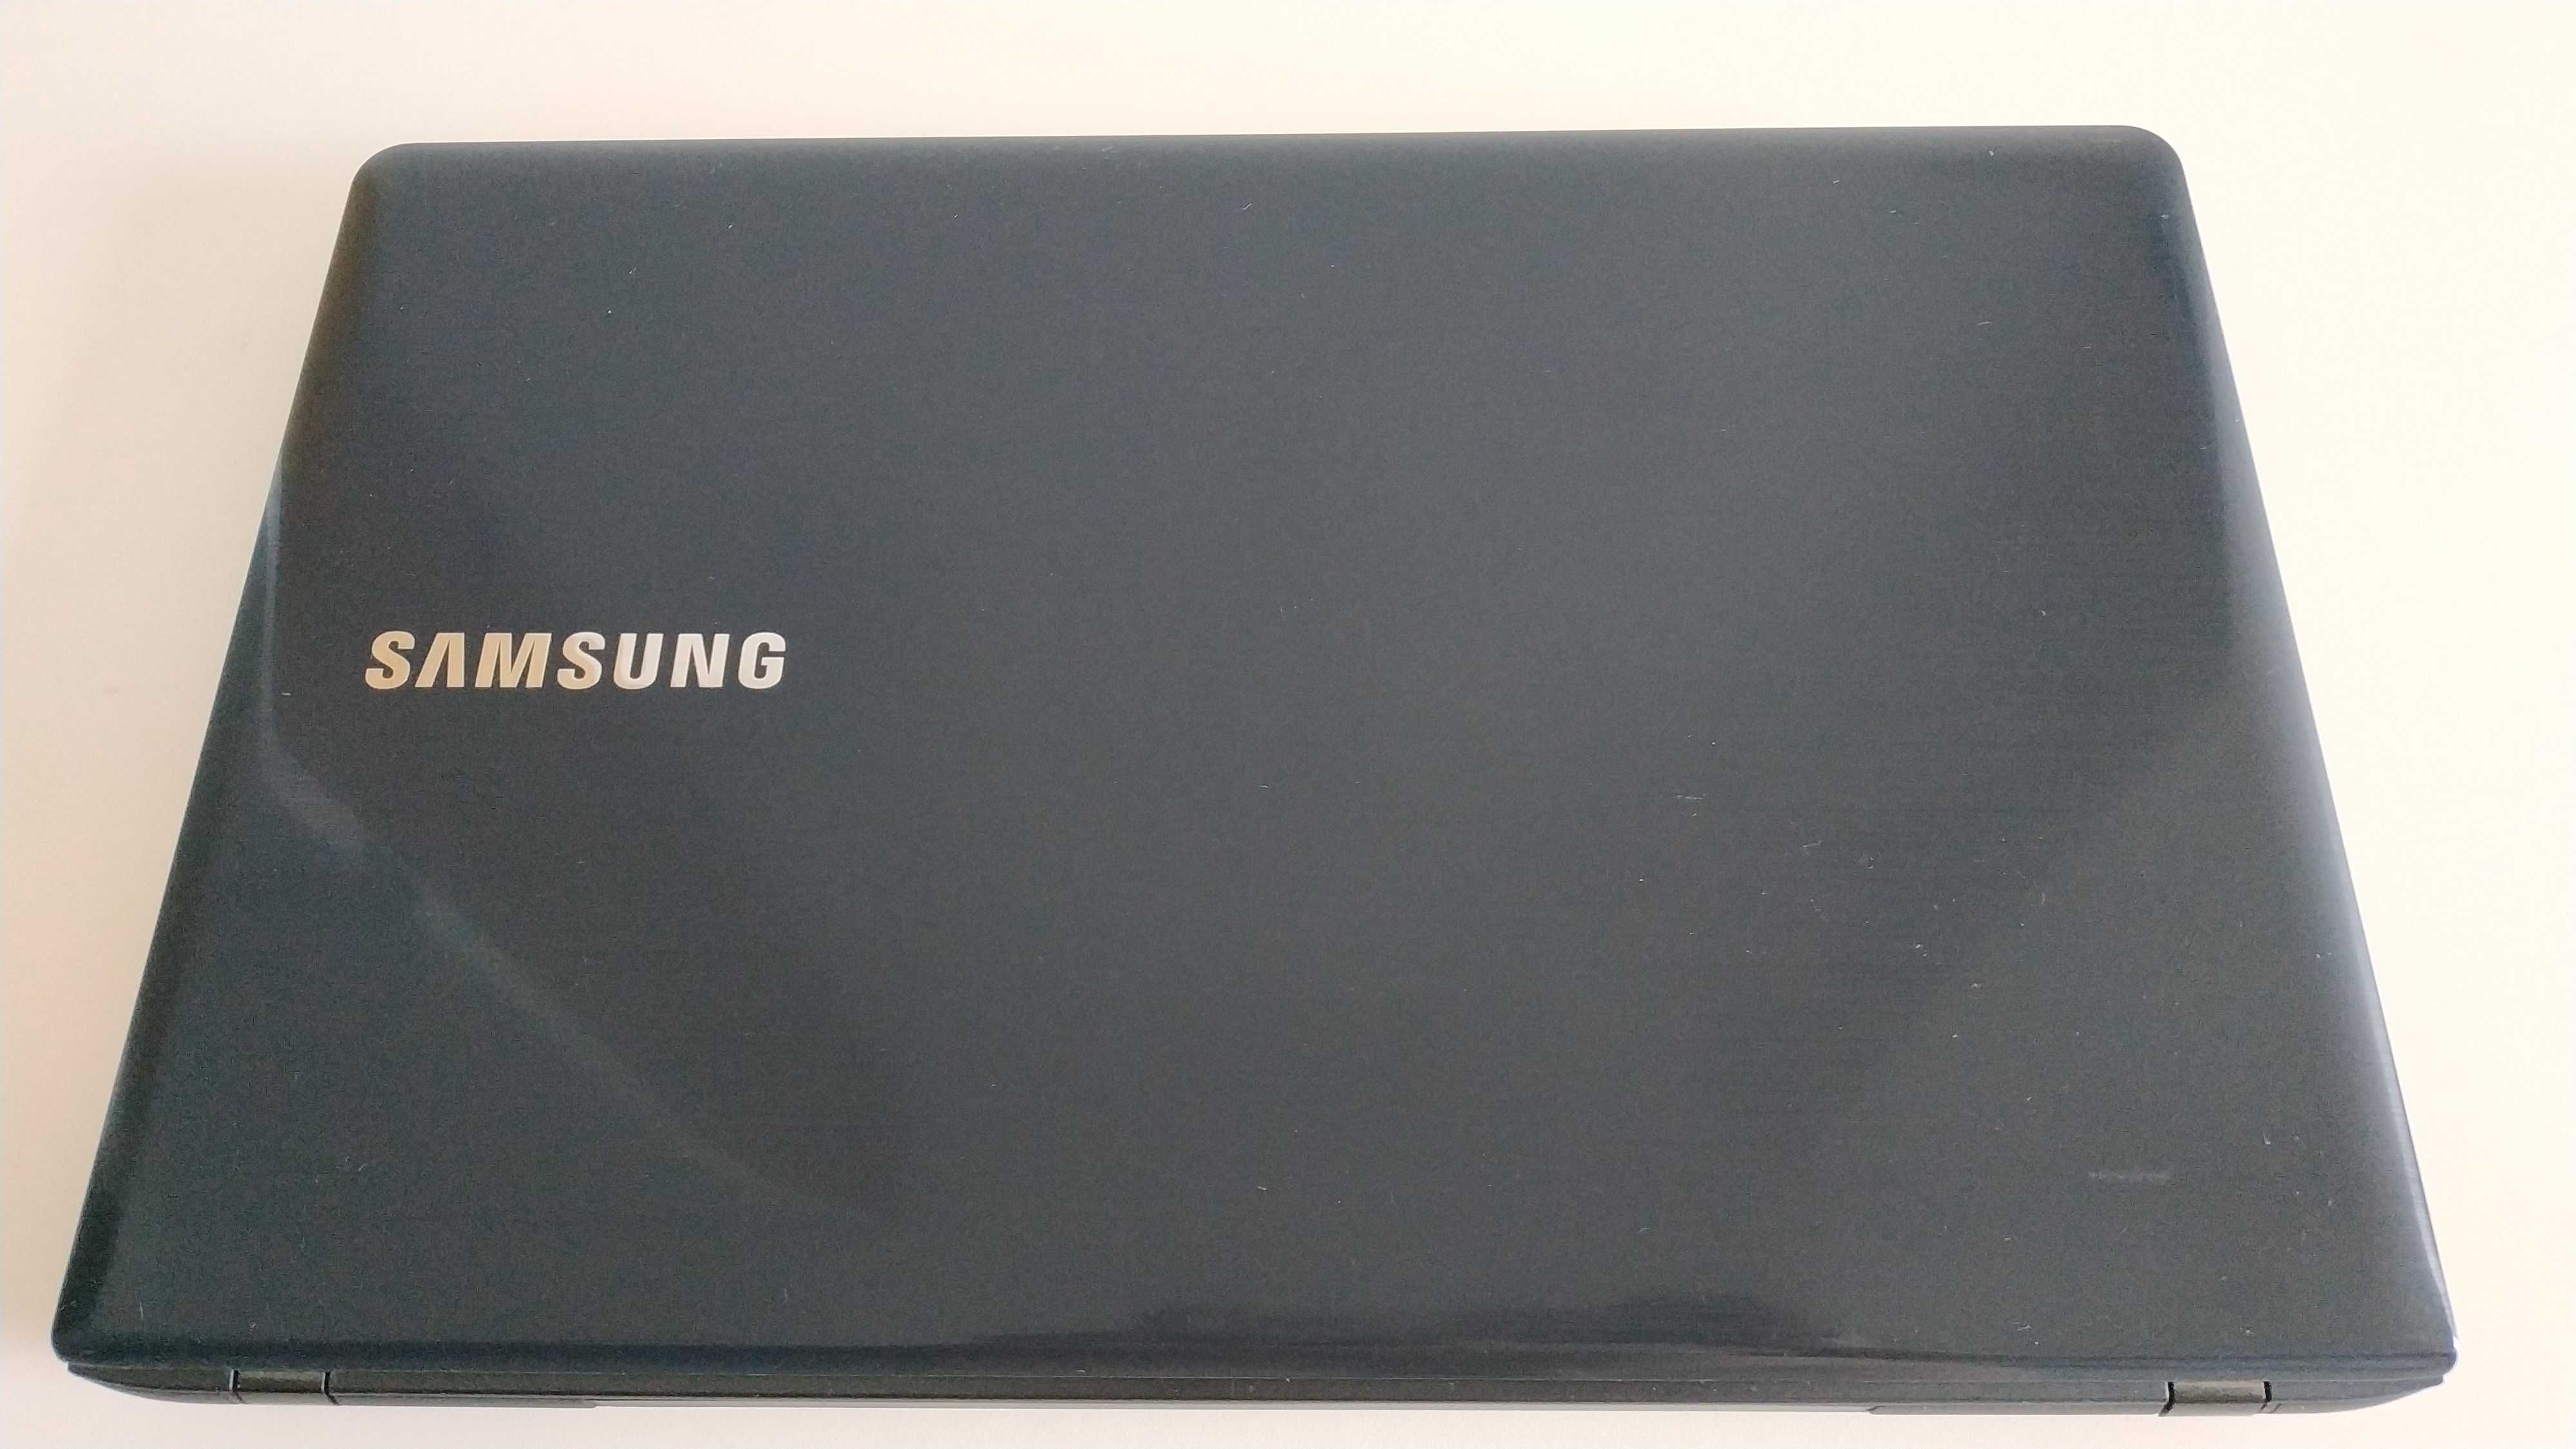 Samsung NP270E5E i3, 4 GB RAM, 500 GB